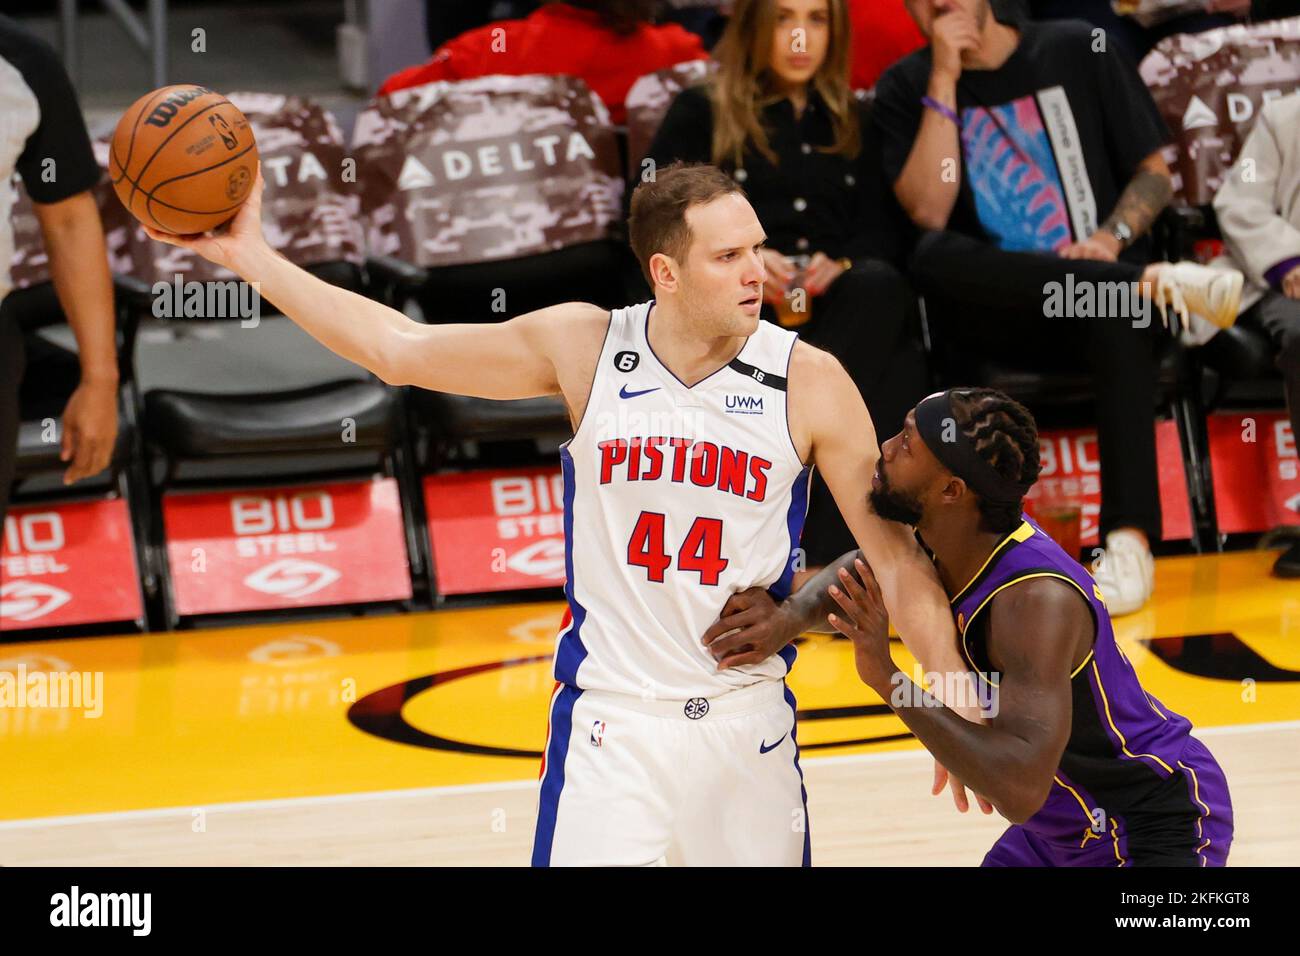 Arena posponer difícil de complacer 18 de noviembre de 2022, Los Angeles, California, EE.UU.: Detroit Pistons  Forward Bojan Bogdanovic (44) es defendido por el guardia de Los Angeles  Lakers Patrick Beverley (21) durante un partido de baloncesto